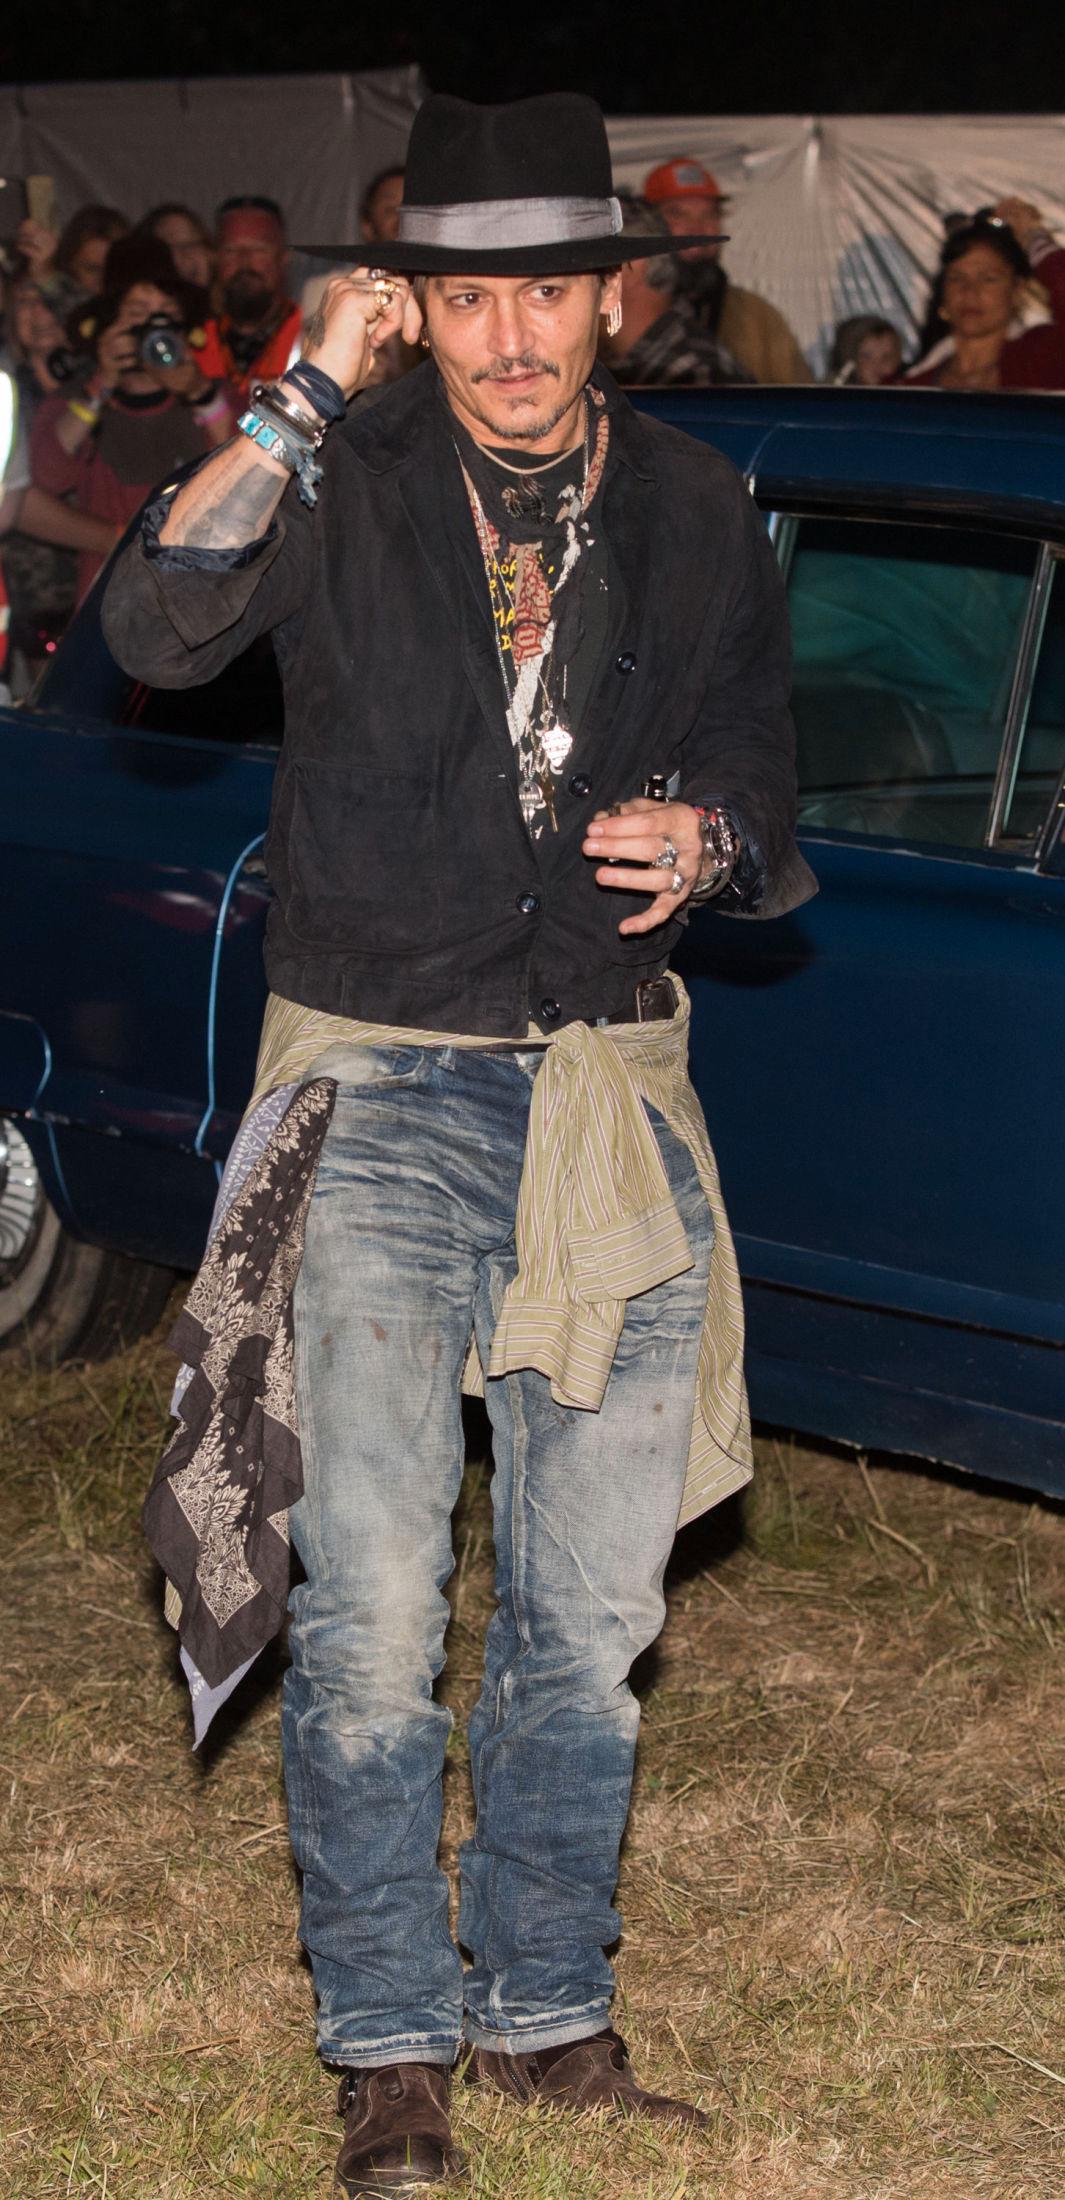 PIRATE: Den bohemske stilen til Johnny Depp er kanskje ikke for alle, men har blitt skuespillerens varemerke gjennom årene. Foto: Getty Images